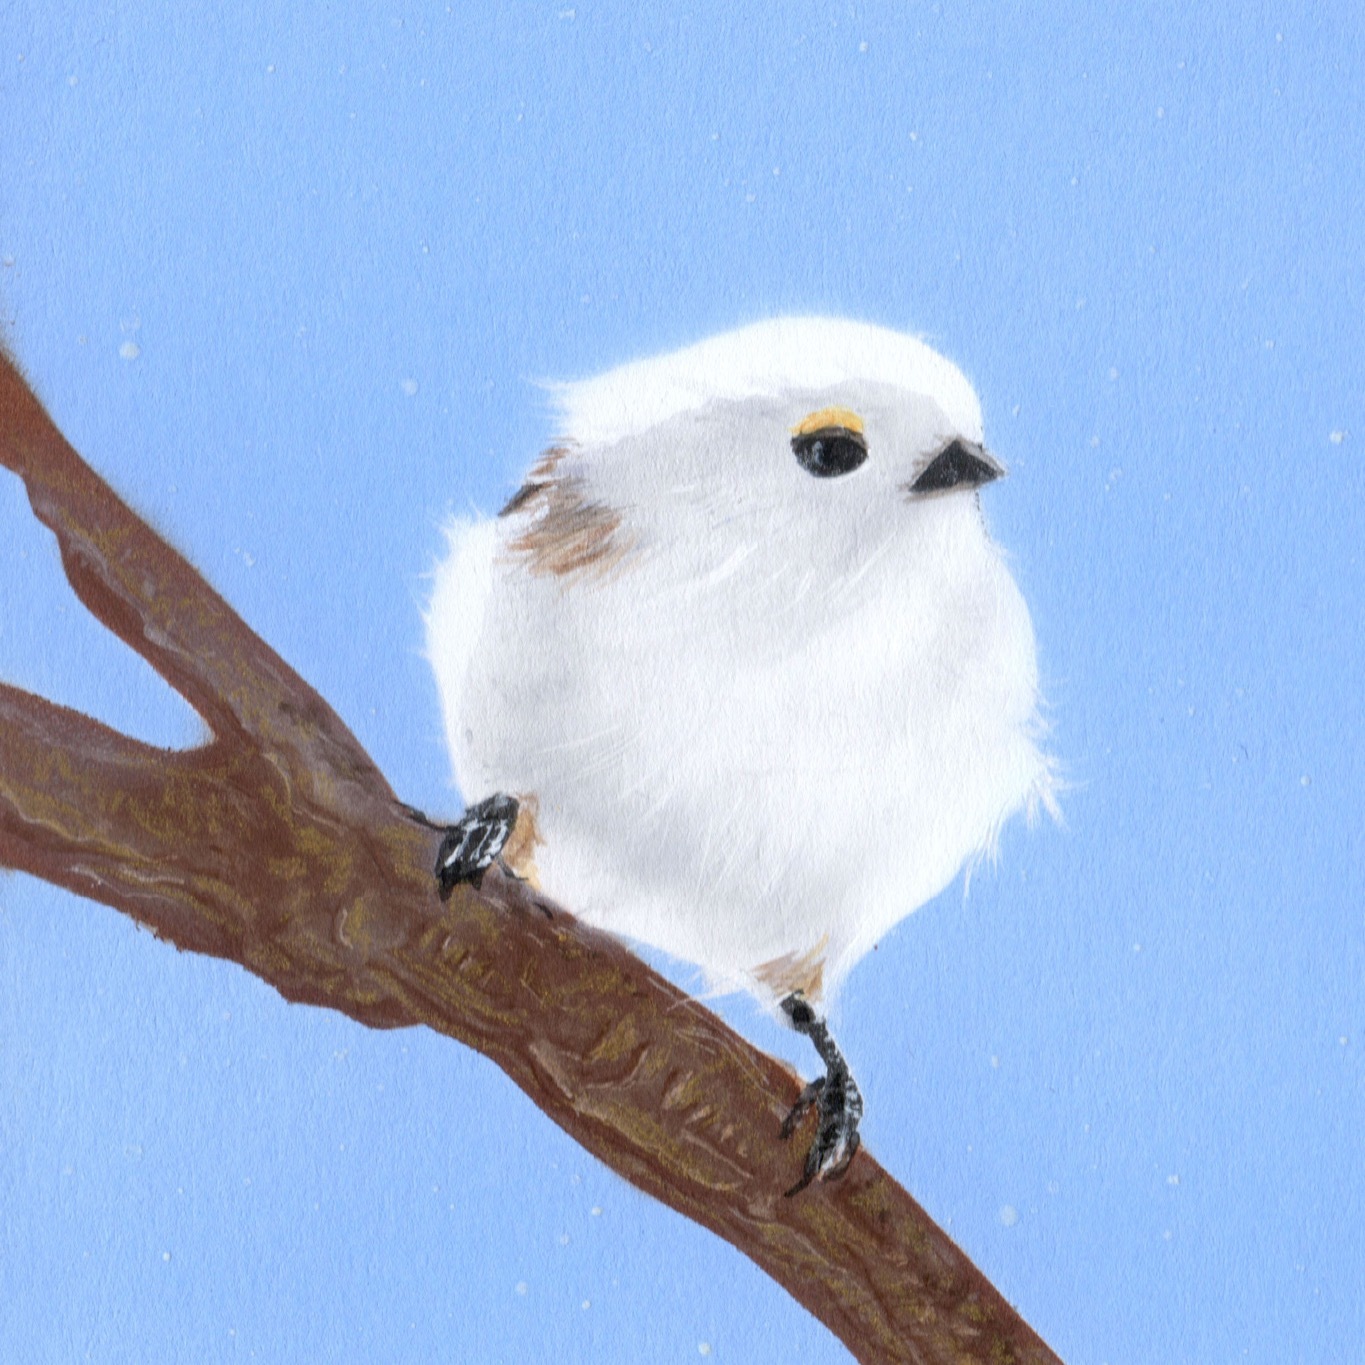 毎日一絵チャレンジ アクリル画 シマエナガ Ver 4 2 メイキング 白銀の鳥展 Junya Blog 猫 犬 リアリズム絵画